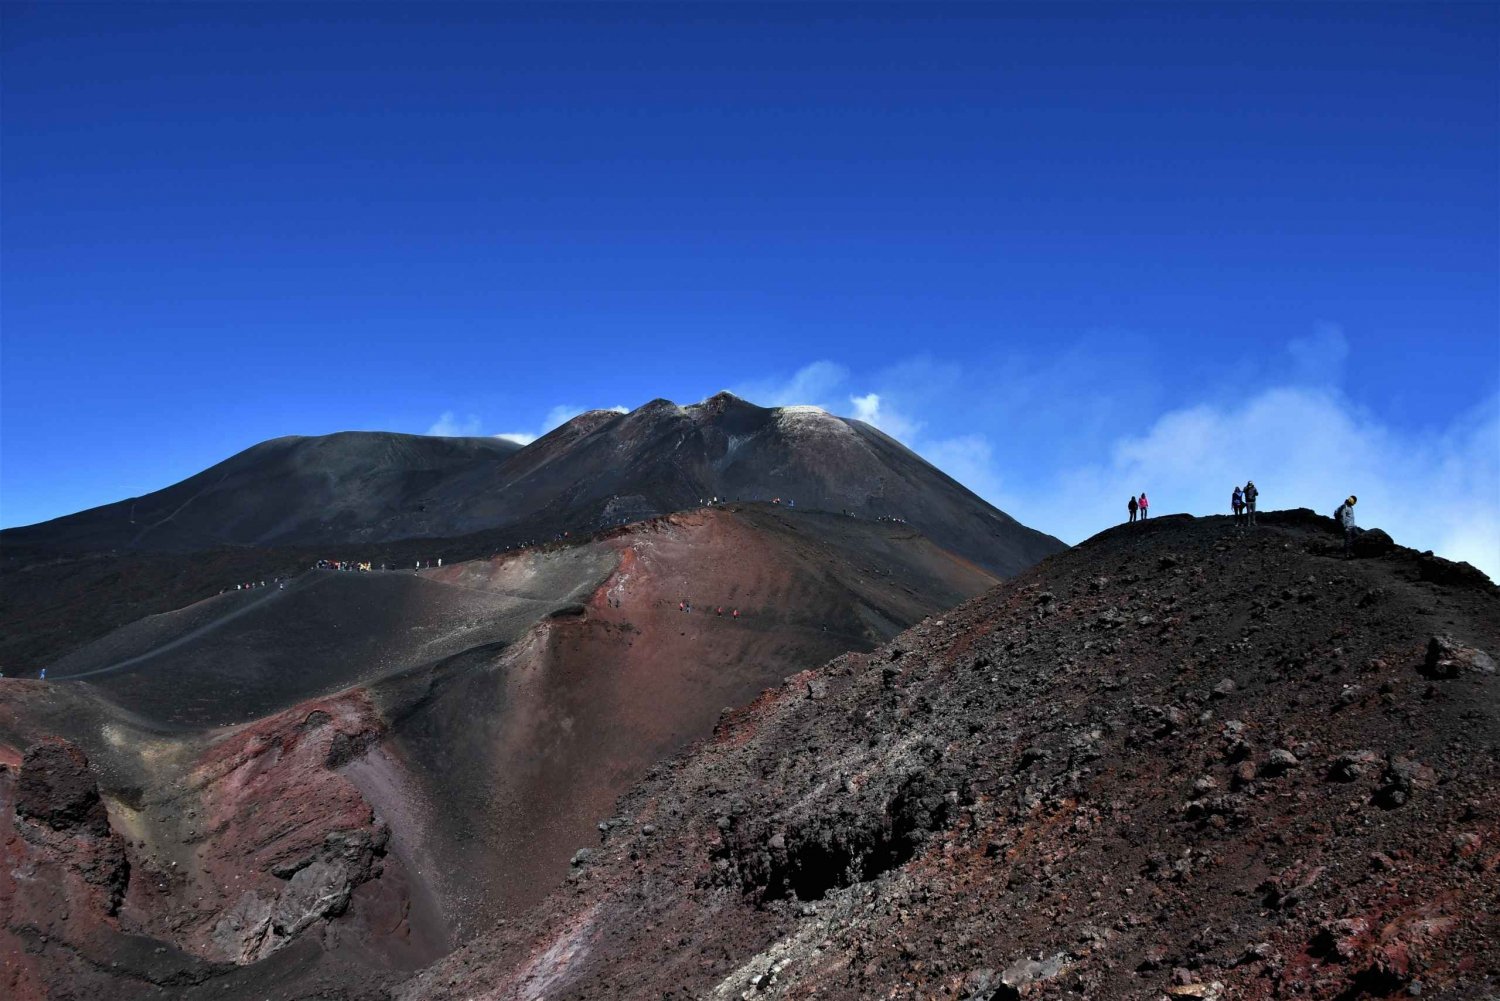 Monte Etna: Excursión guiada a la cumbre de 3000 metros